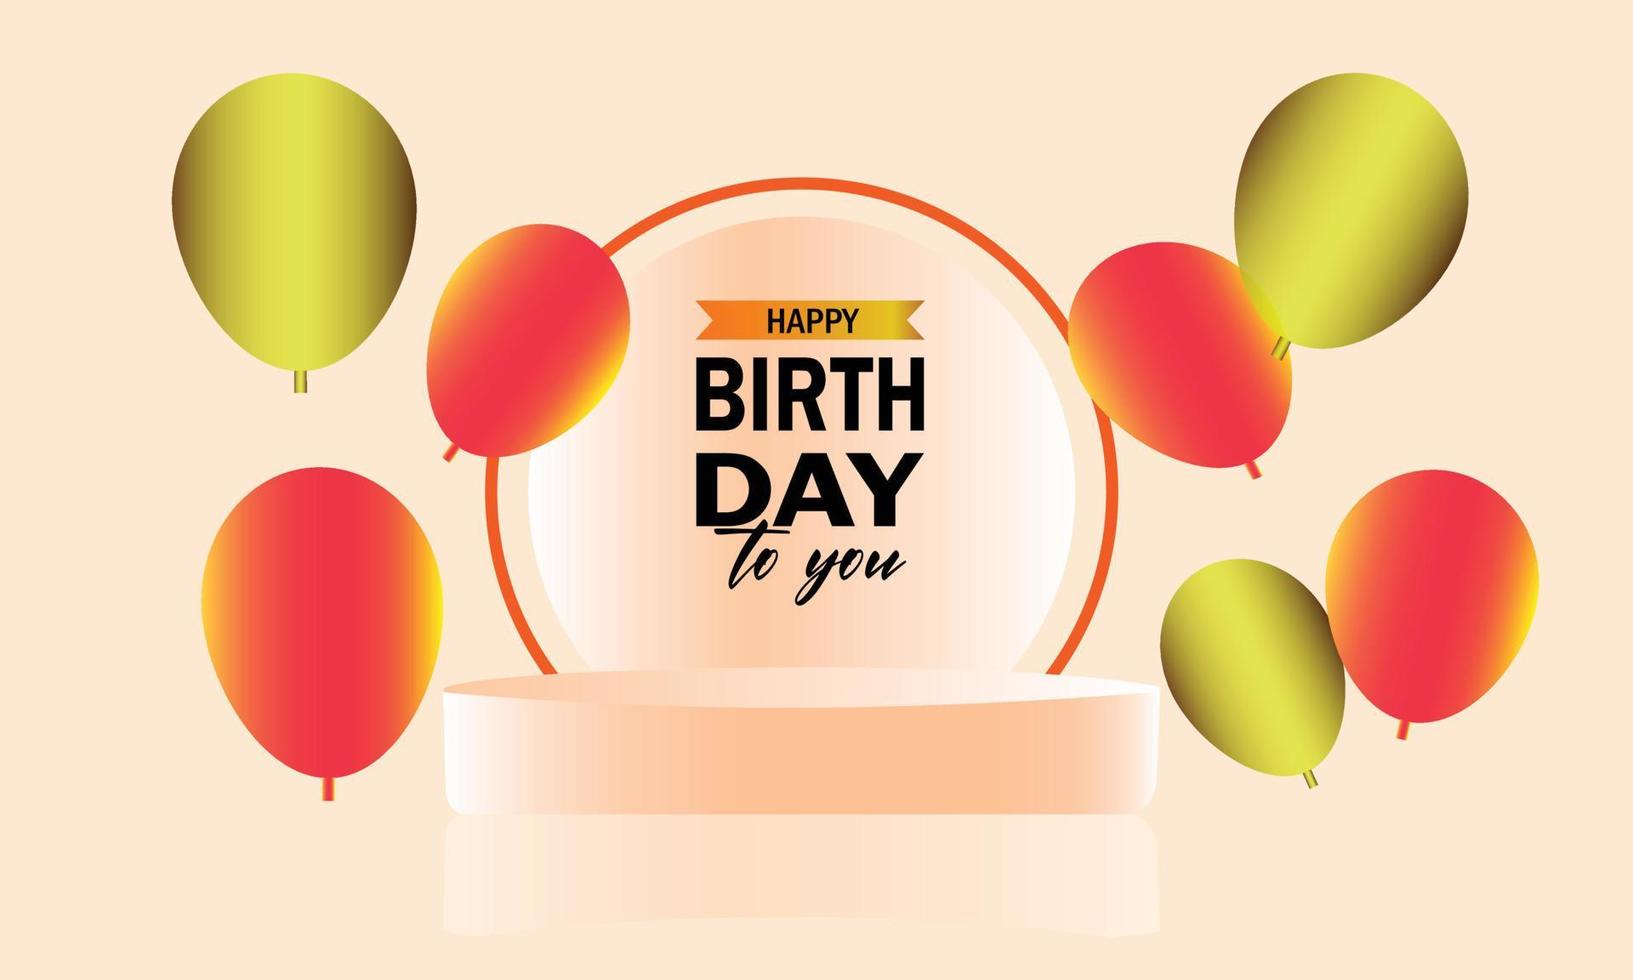 Happy Birthday typography vector design